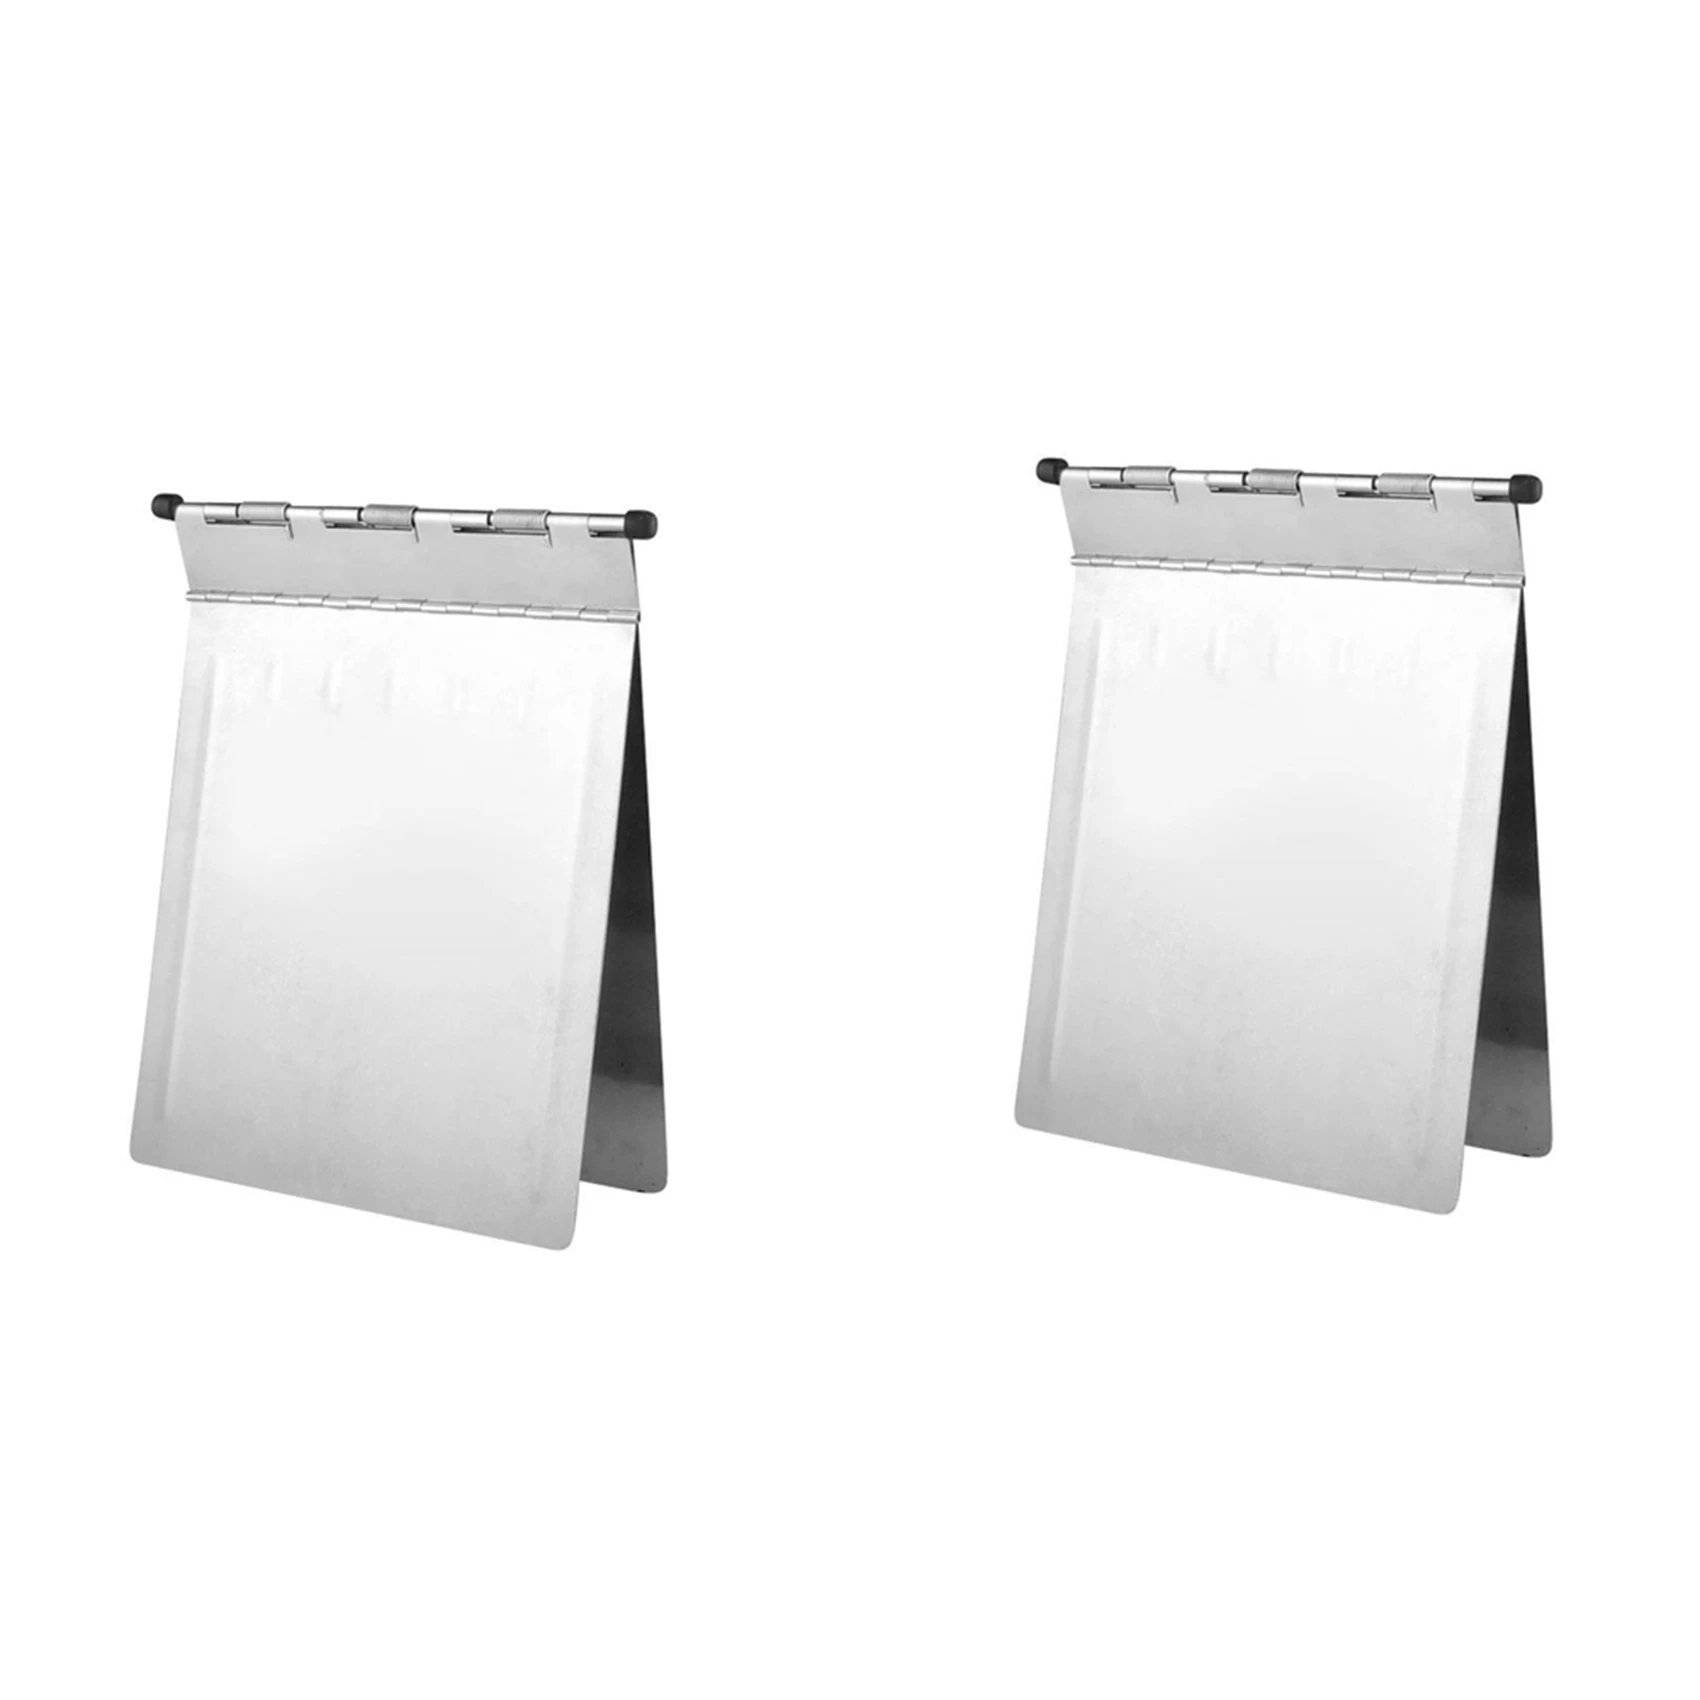 

2X Metal Clipboard A4 Stainless Steel Patient Record Folders Clip Board Folder for Office School Teach Doctor Nurse